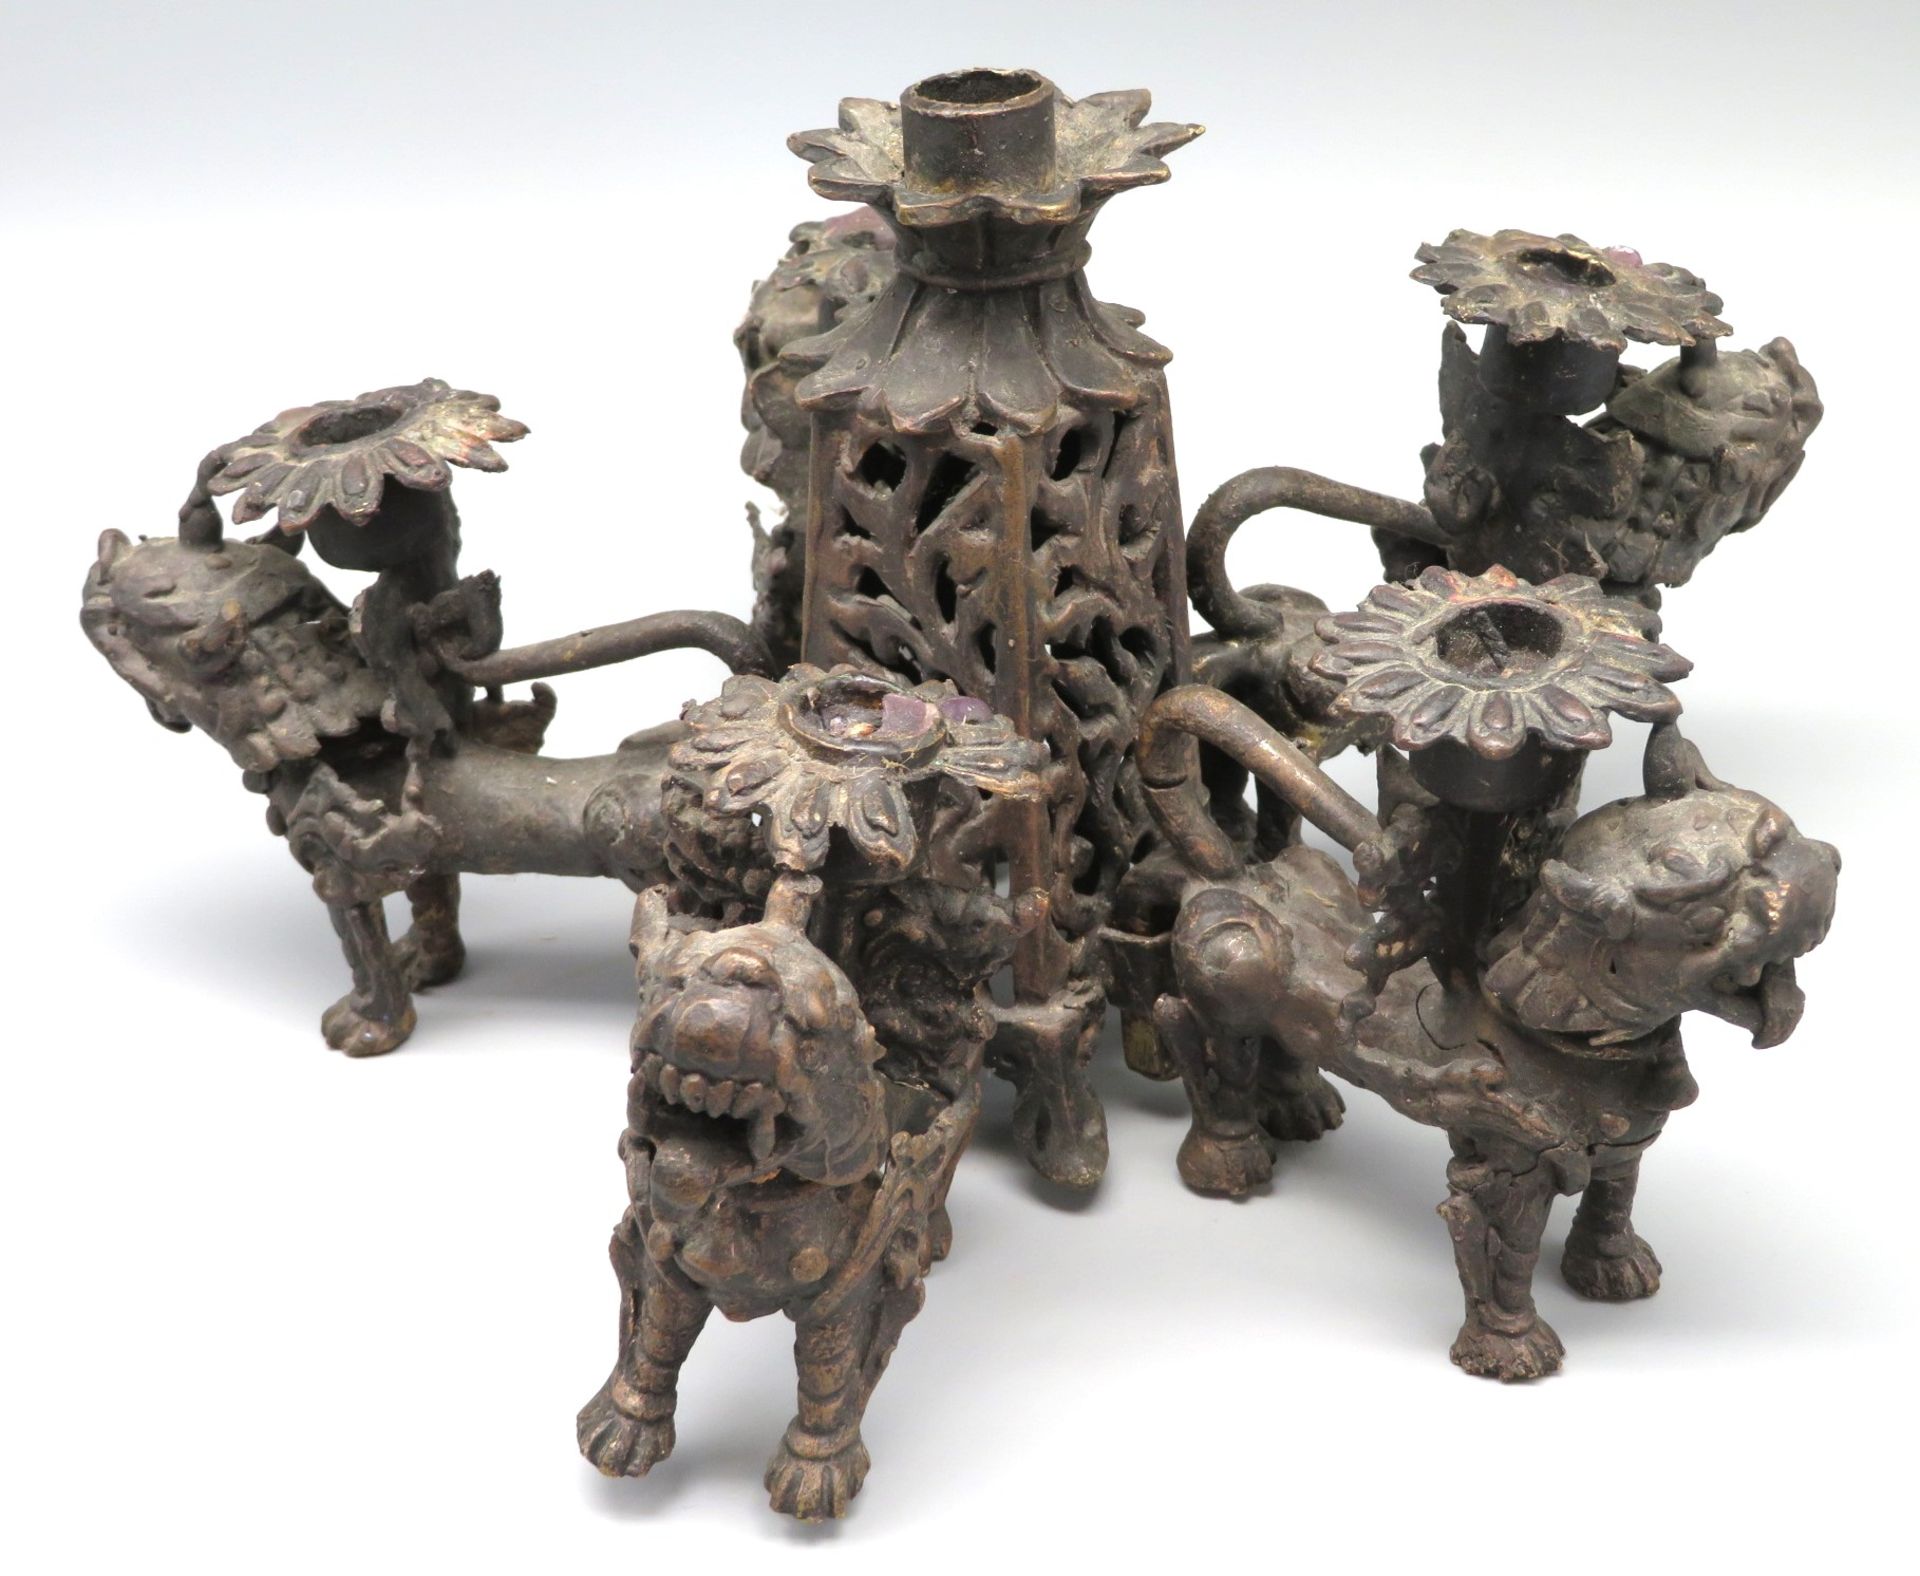 Kerzenleuchter, China, Tüllen getragen durch 5 Fo-Hunde, Bronze, h 15,5 cm, d 29 cm.